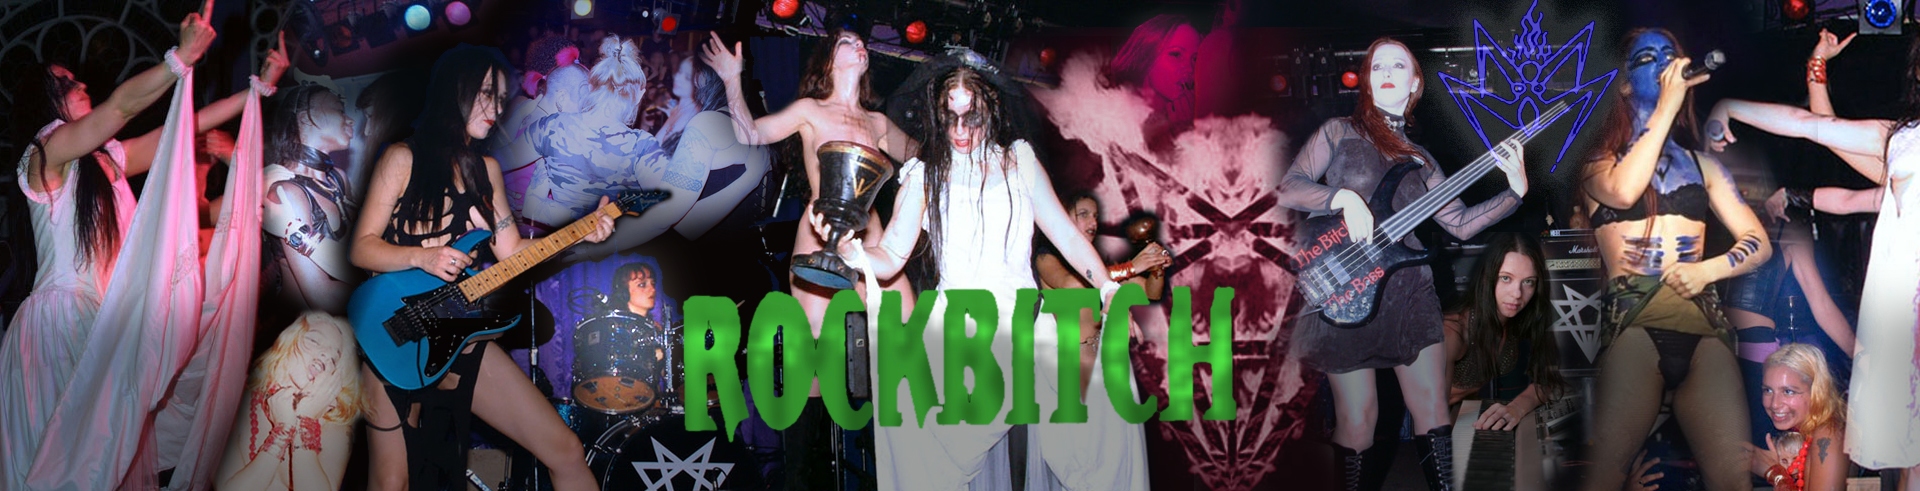 Rockbitch: la banda británica de mujeres más polémica del rock 